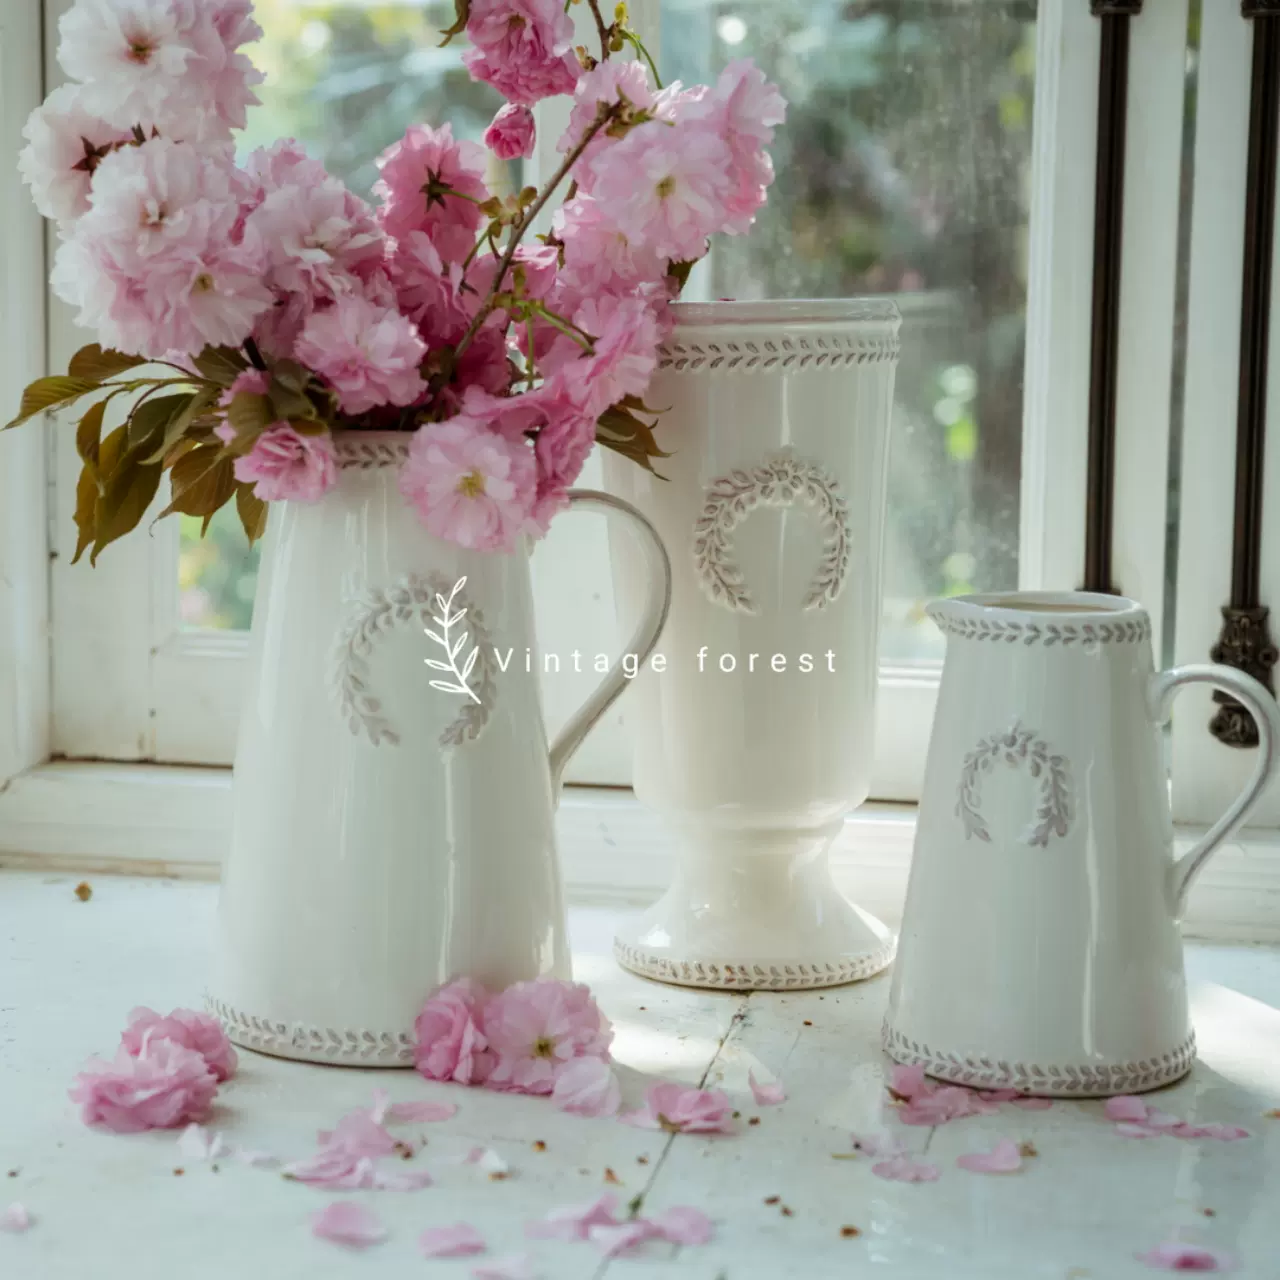 外贸出口欧美法式田园陶瓷浮雕水奶壶水培干鲜插花束摄影道具花瓶-Taobao